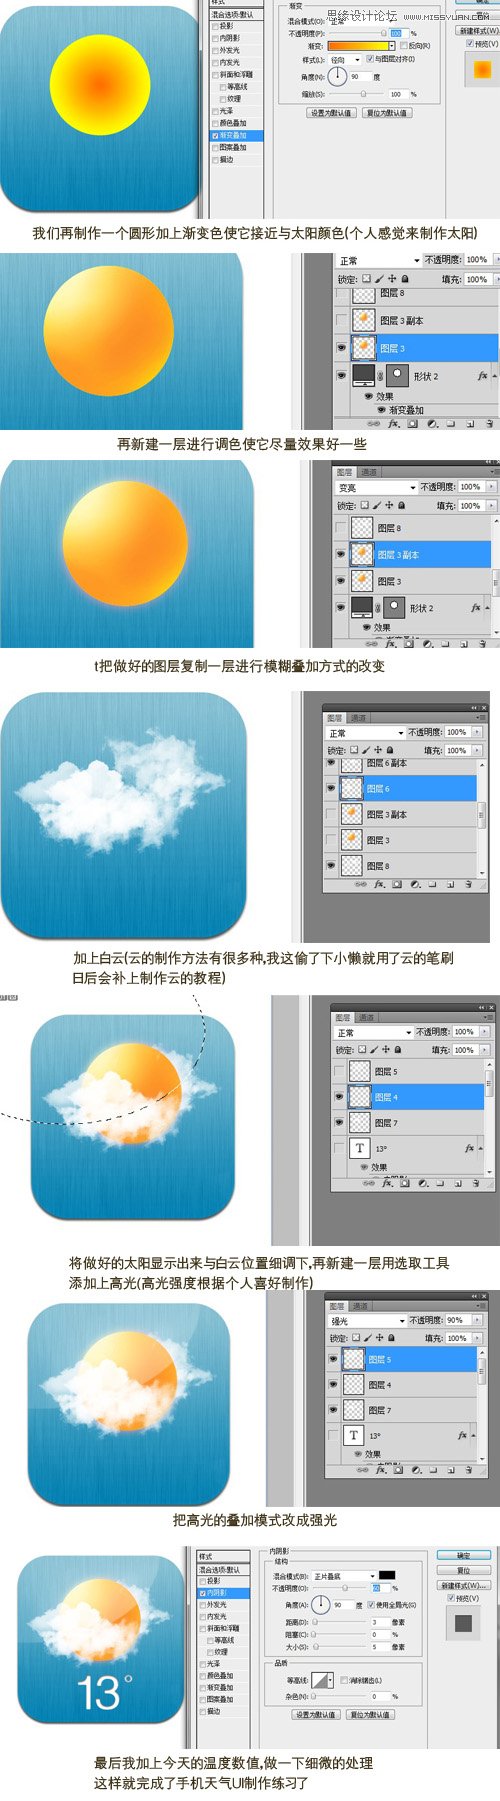 Photoshop简单设计手机天气UI图标教程,PS教程,16xx8.com教程网